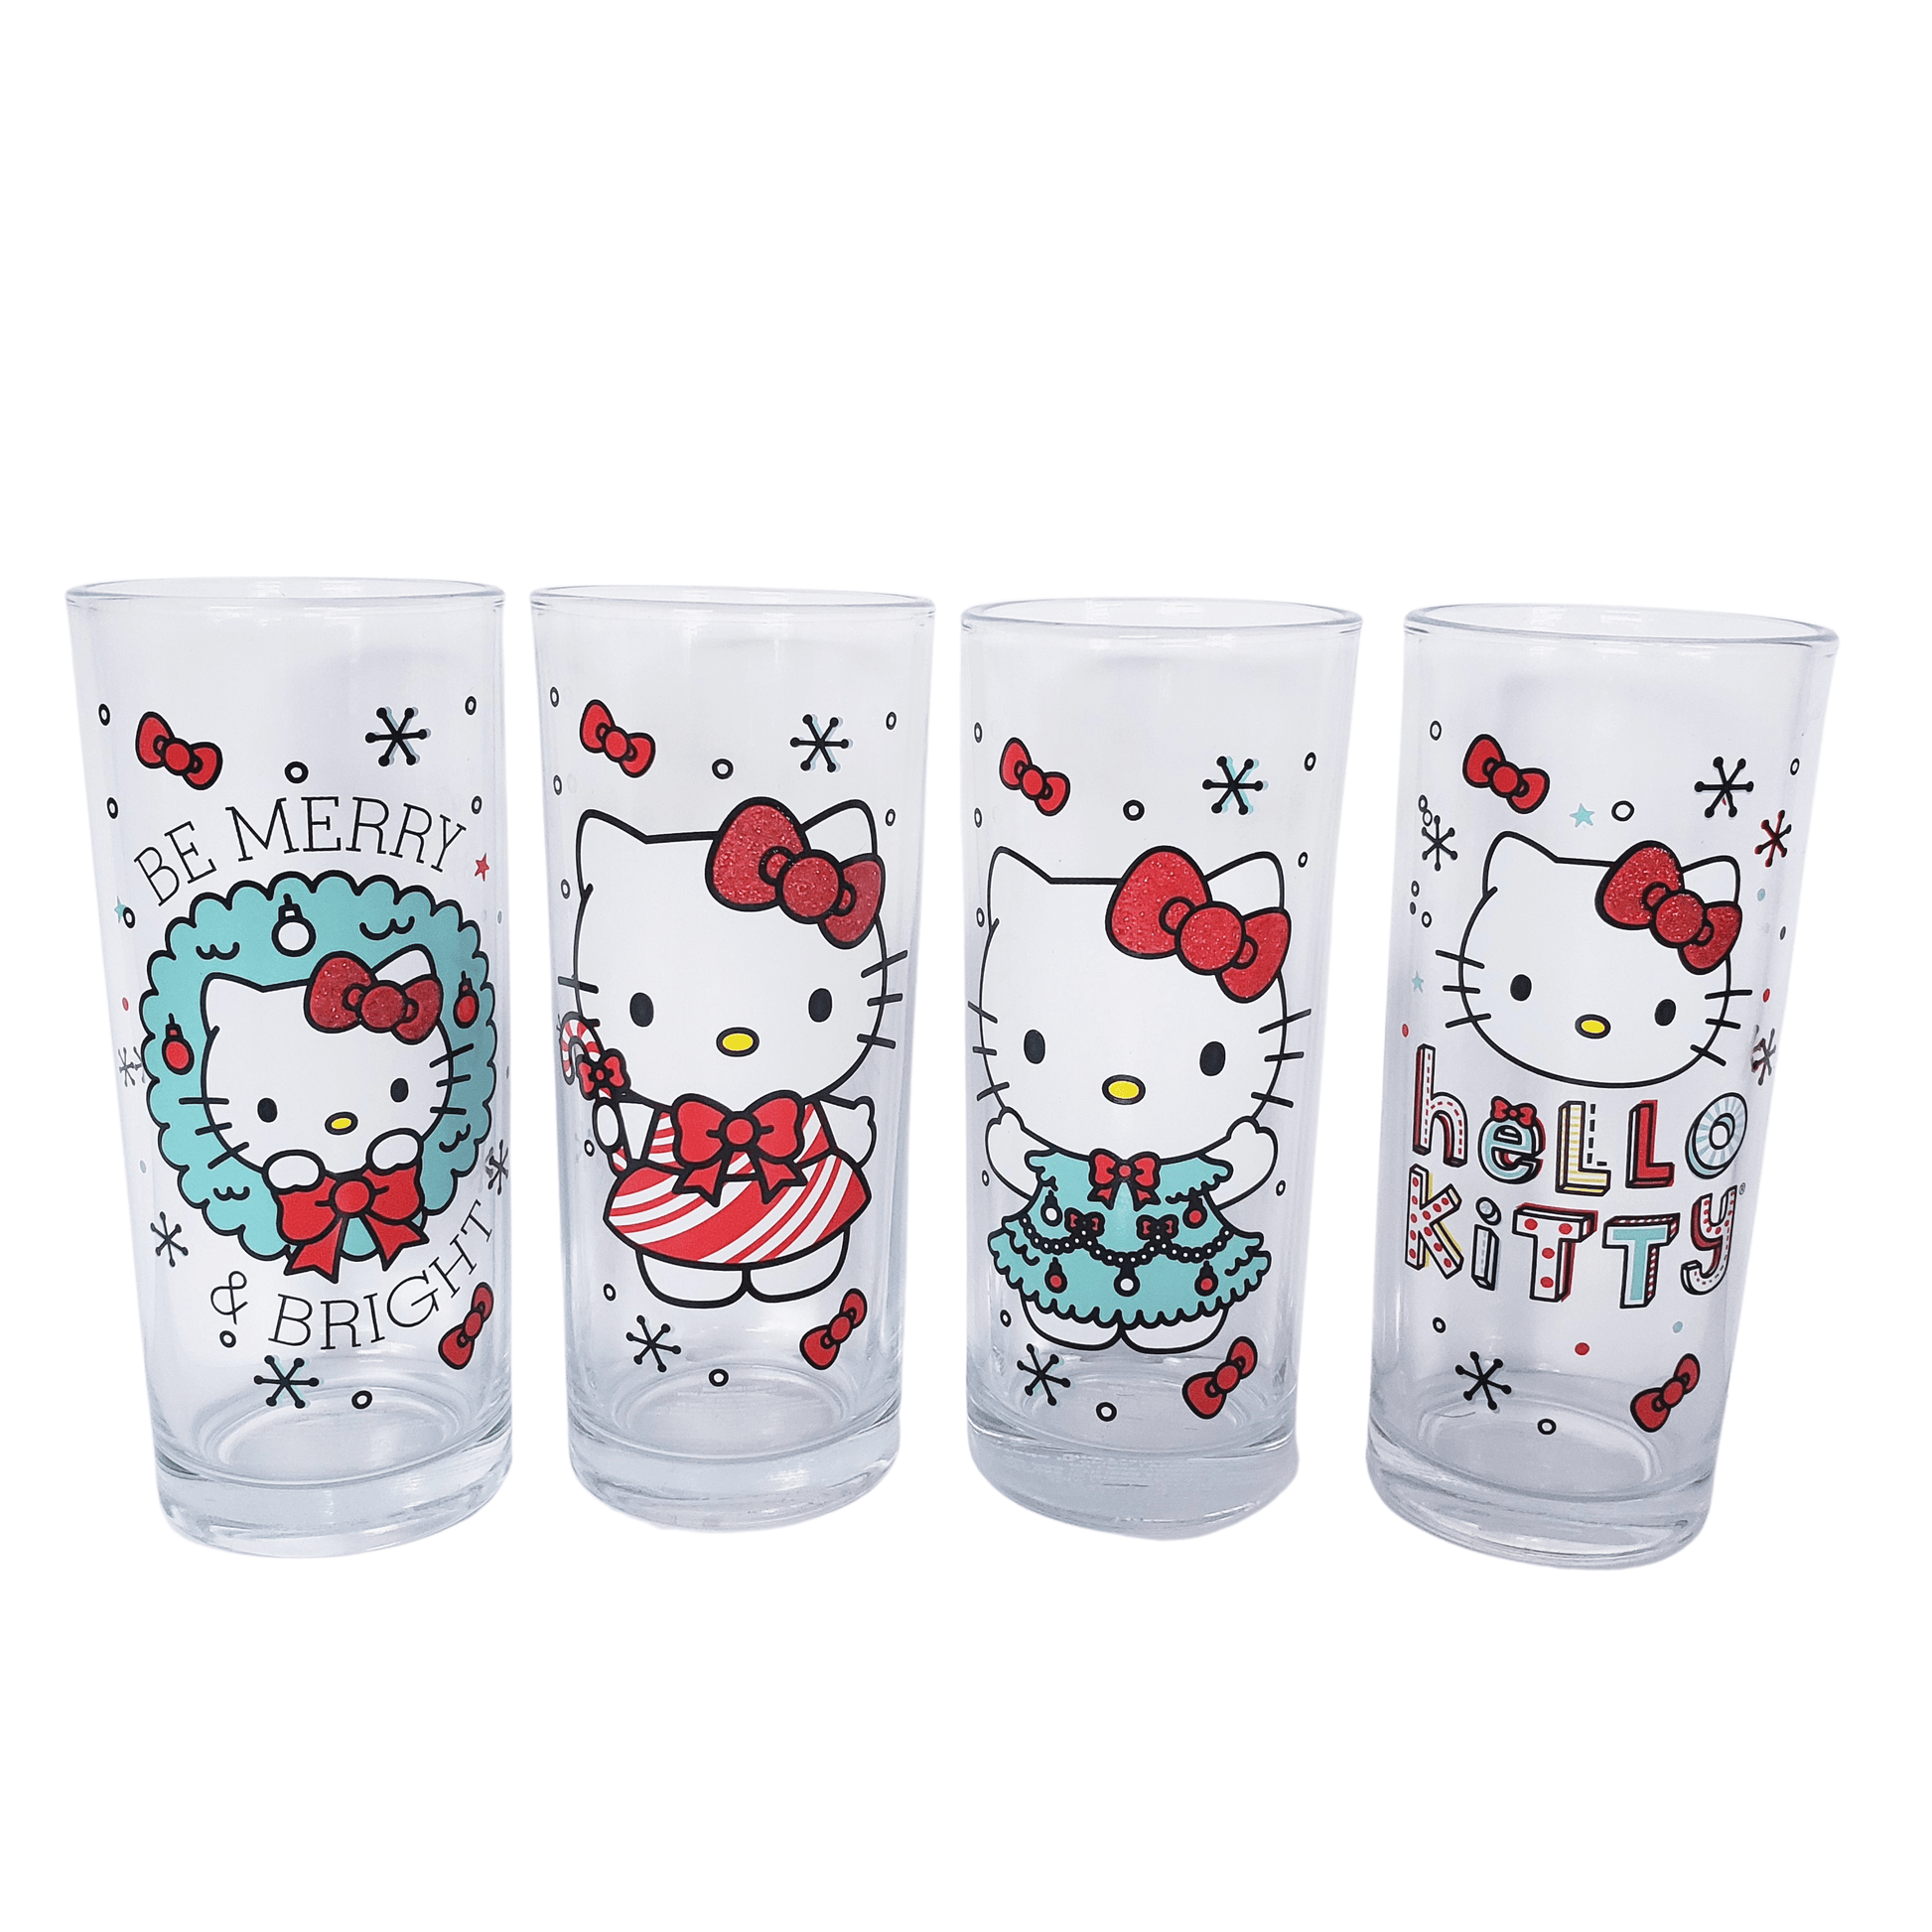 Sanrio Hello Kitty Christmas Glassware Set